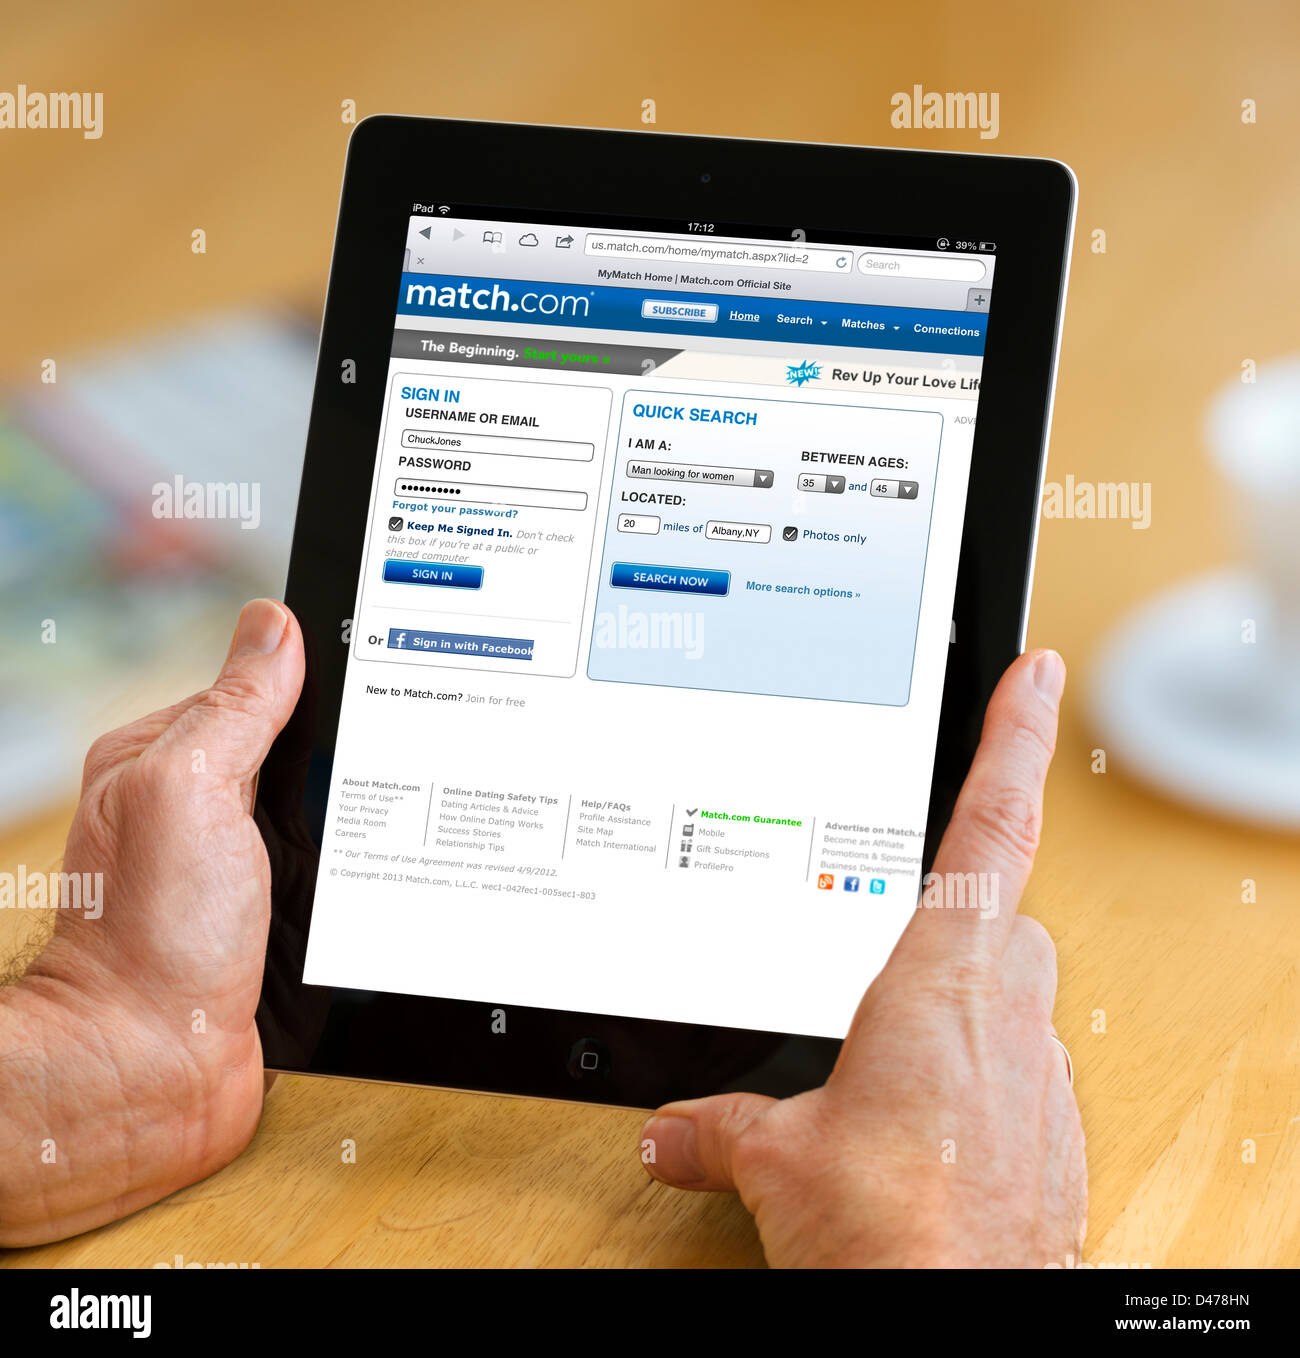 Die online-dating Website match.com angesehen in den USA auf eine 4. Generation Apple iPad, USA Stockfoto